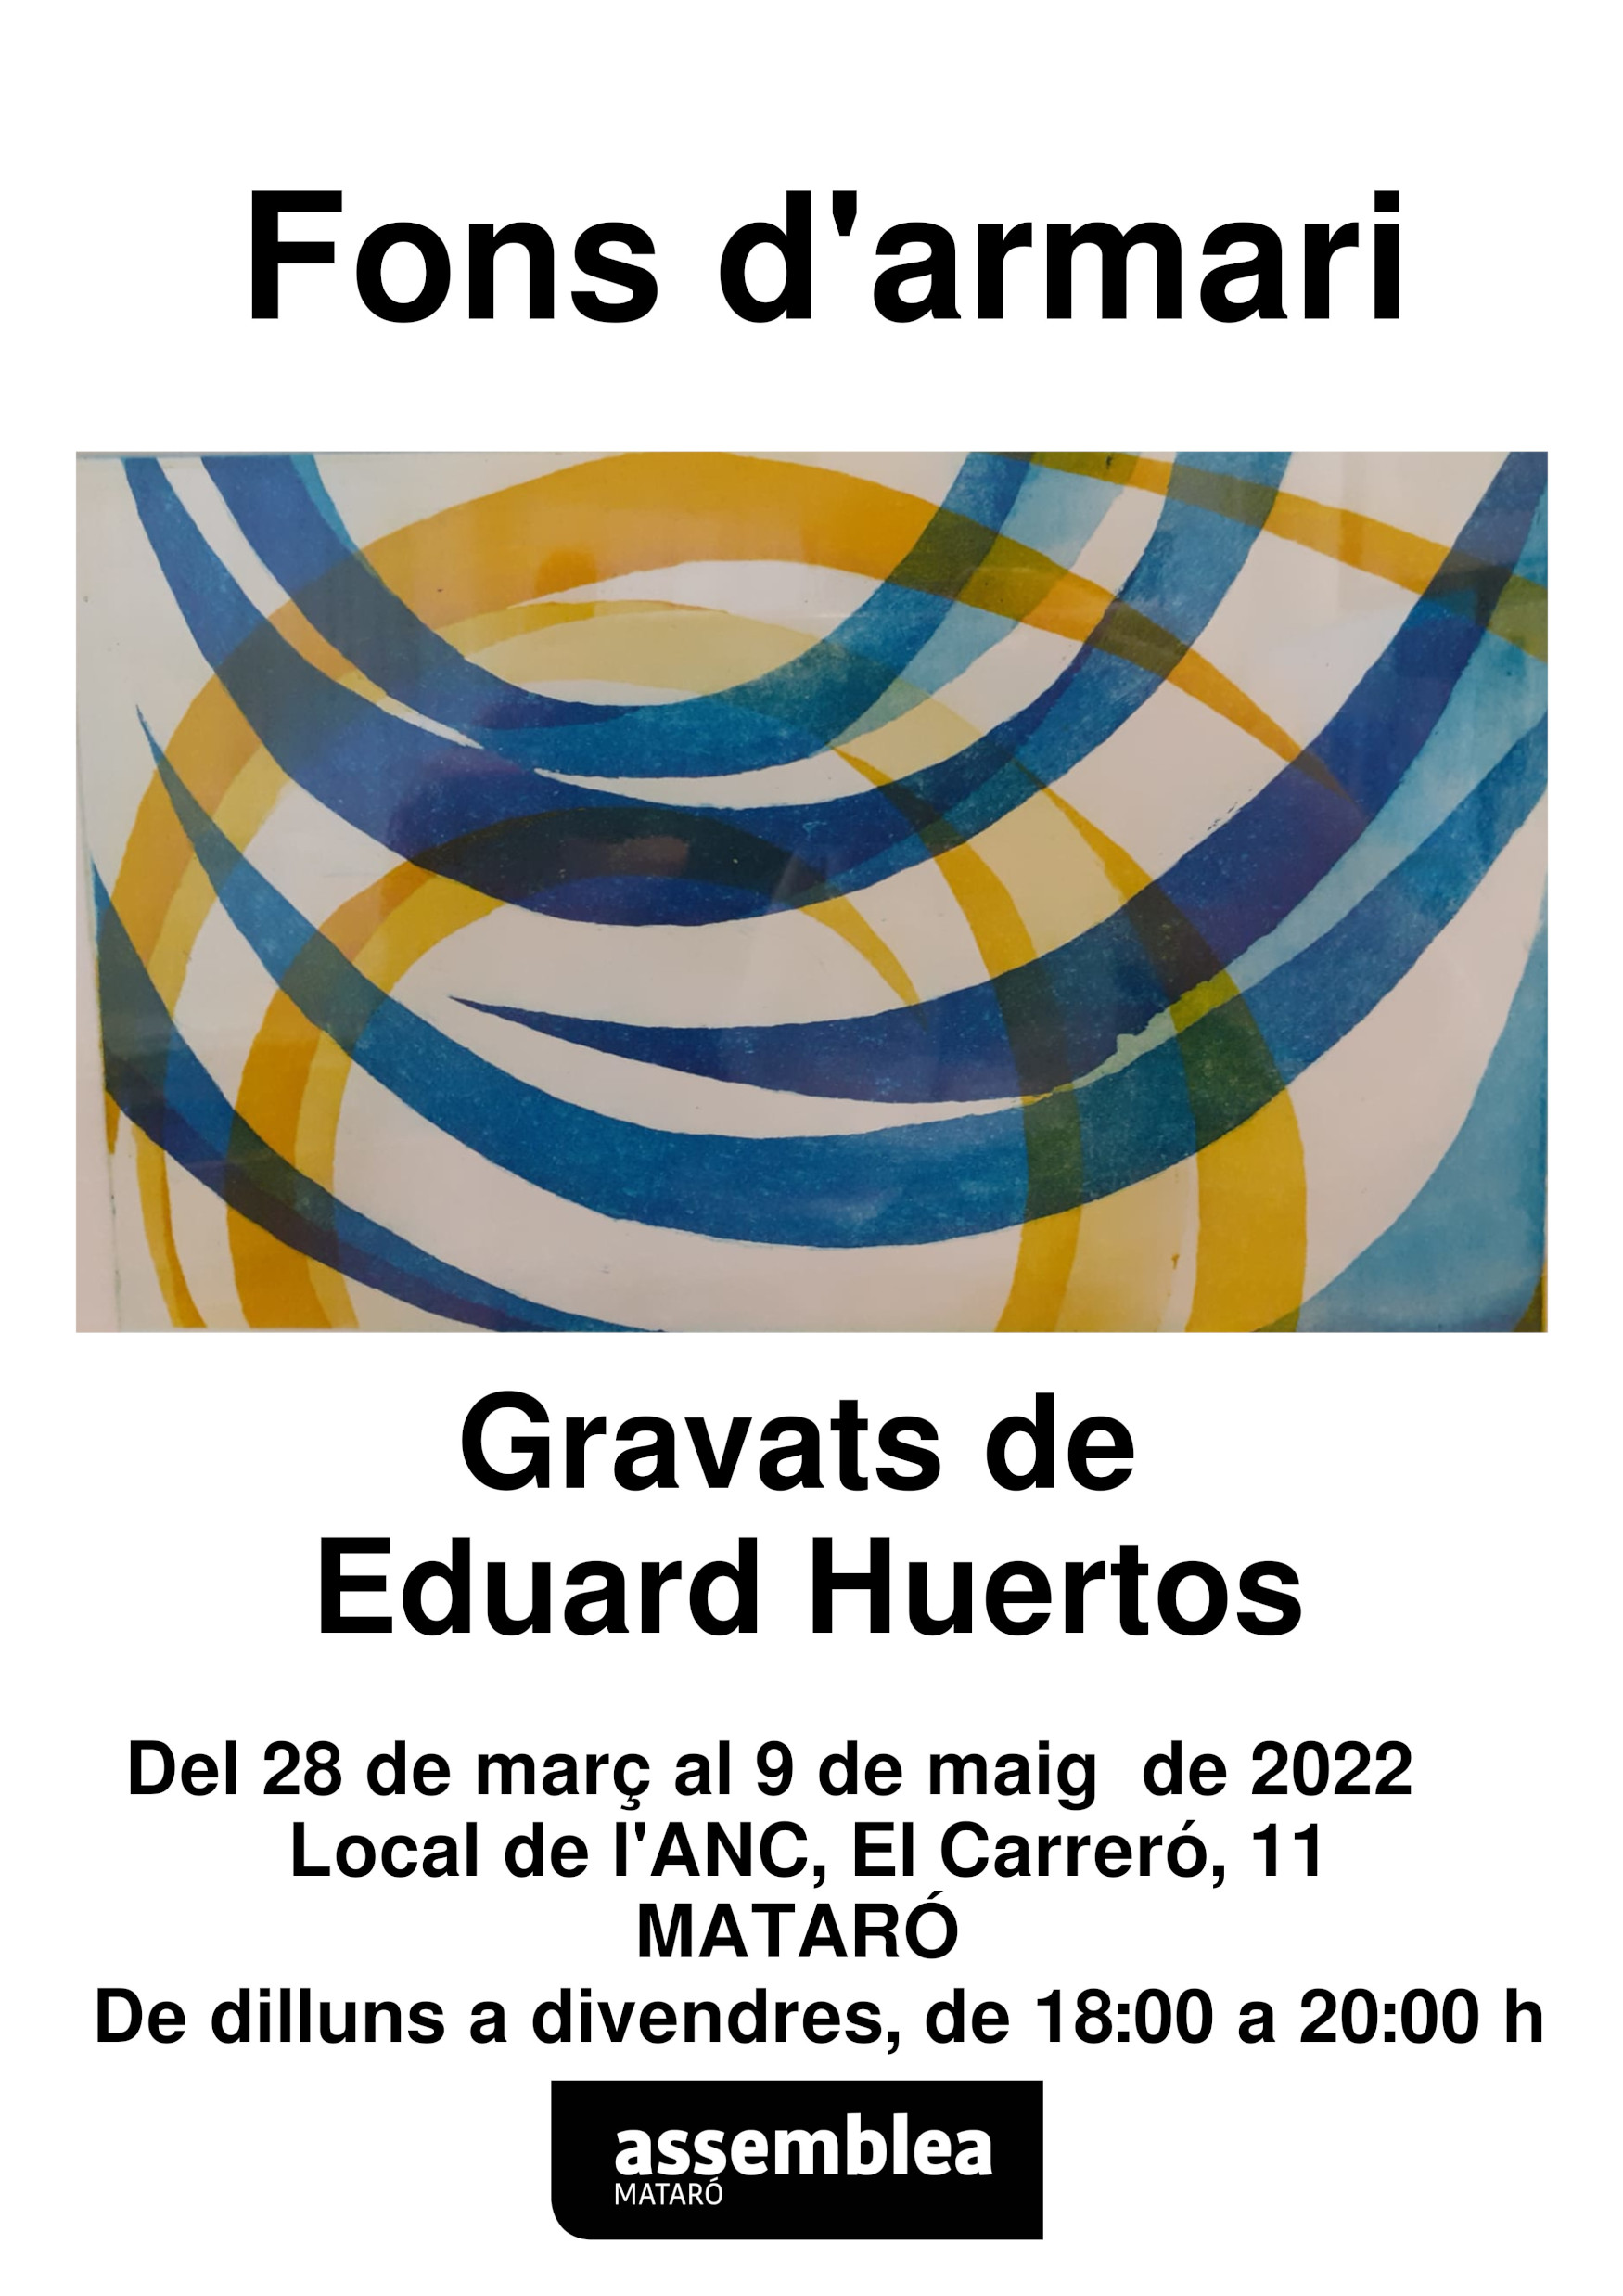 Exposició "Fons d'armari" d'Eduard Huertos